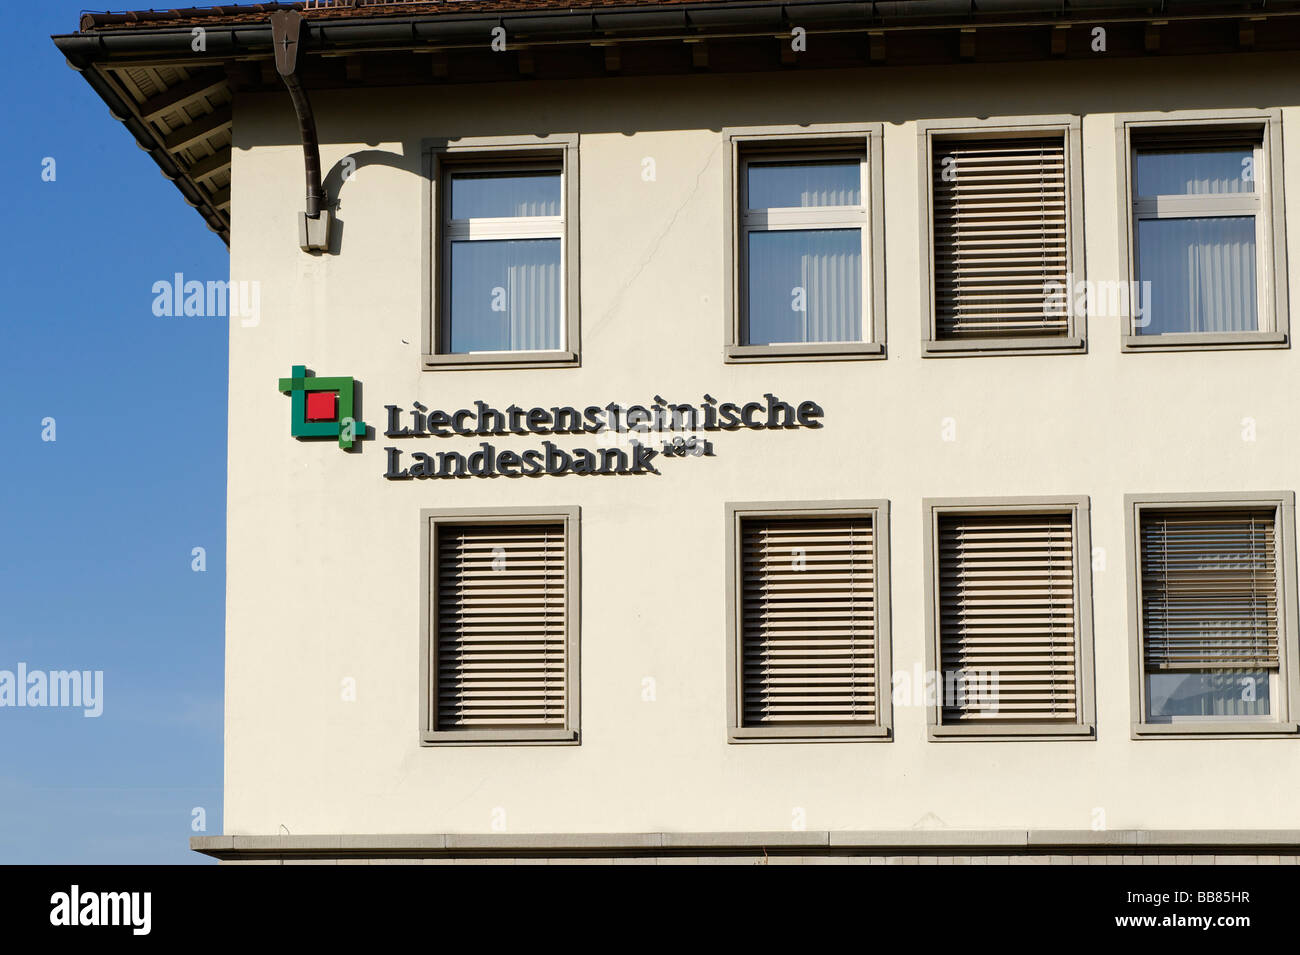 Liechtensteinische Landesbank, federal state bank, Vaduz, Liechtenstein principality, Europe Stock Photo